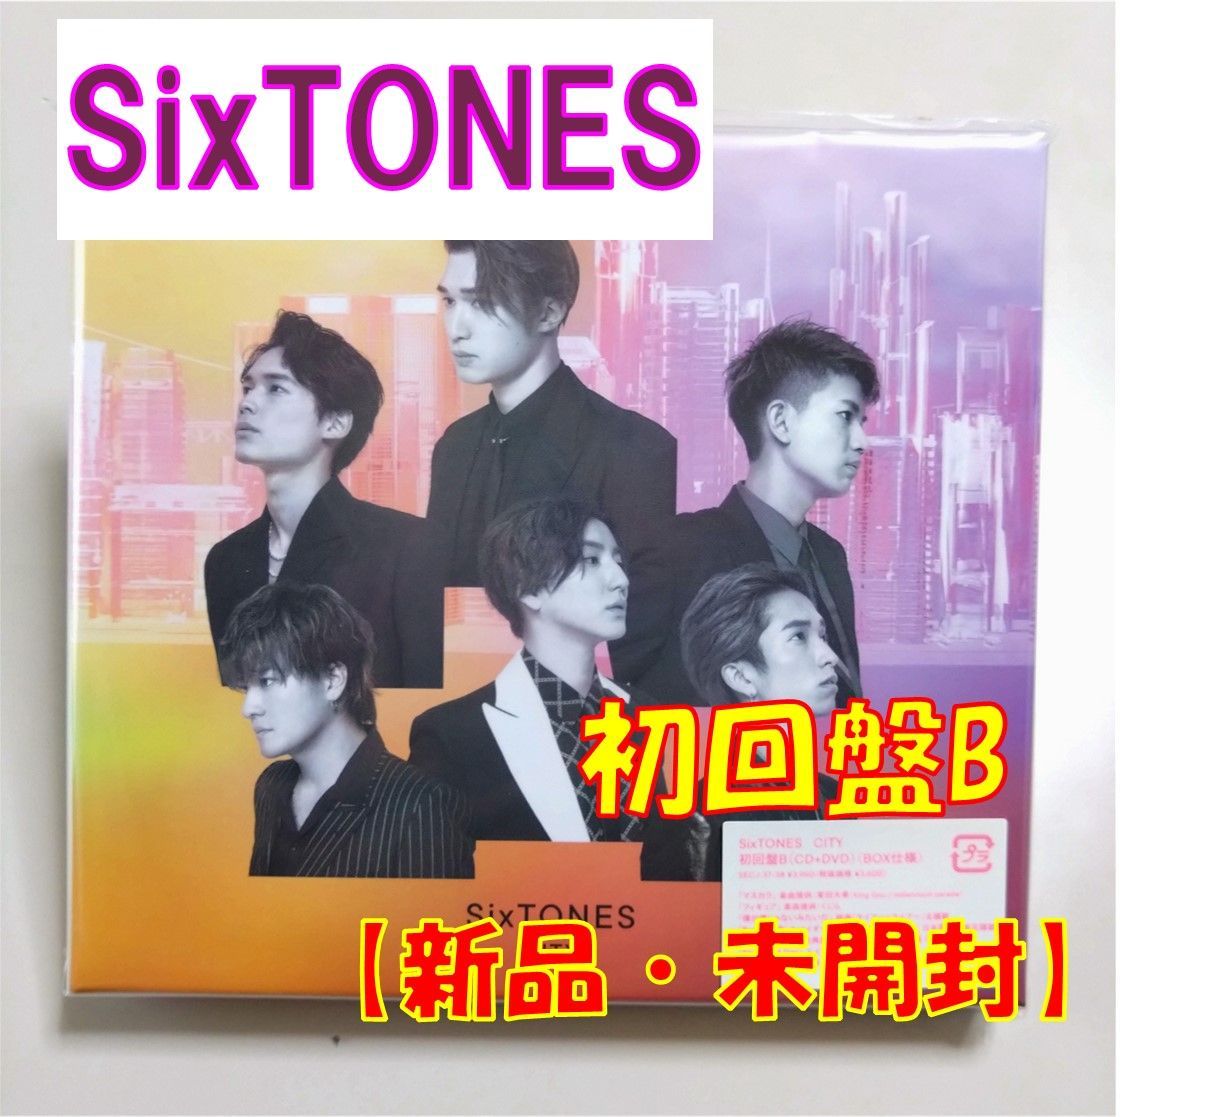 【CD】SixTONES 【CITY】(初回盤B)【CD+DVD】【新品　未開封】【匿名配送】即購入OK